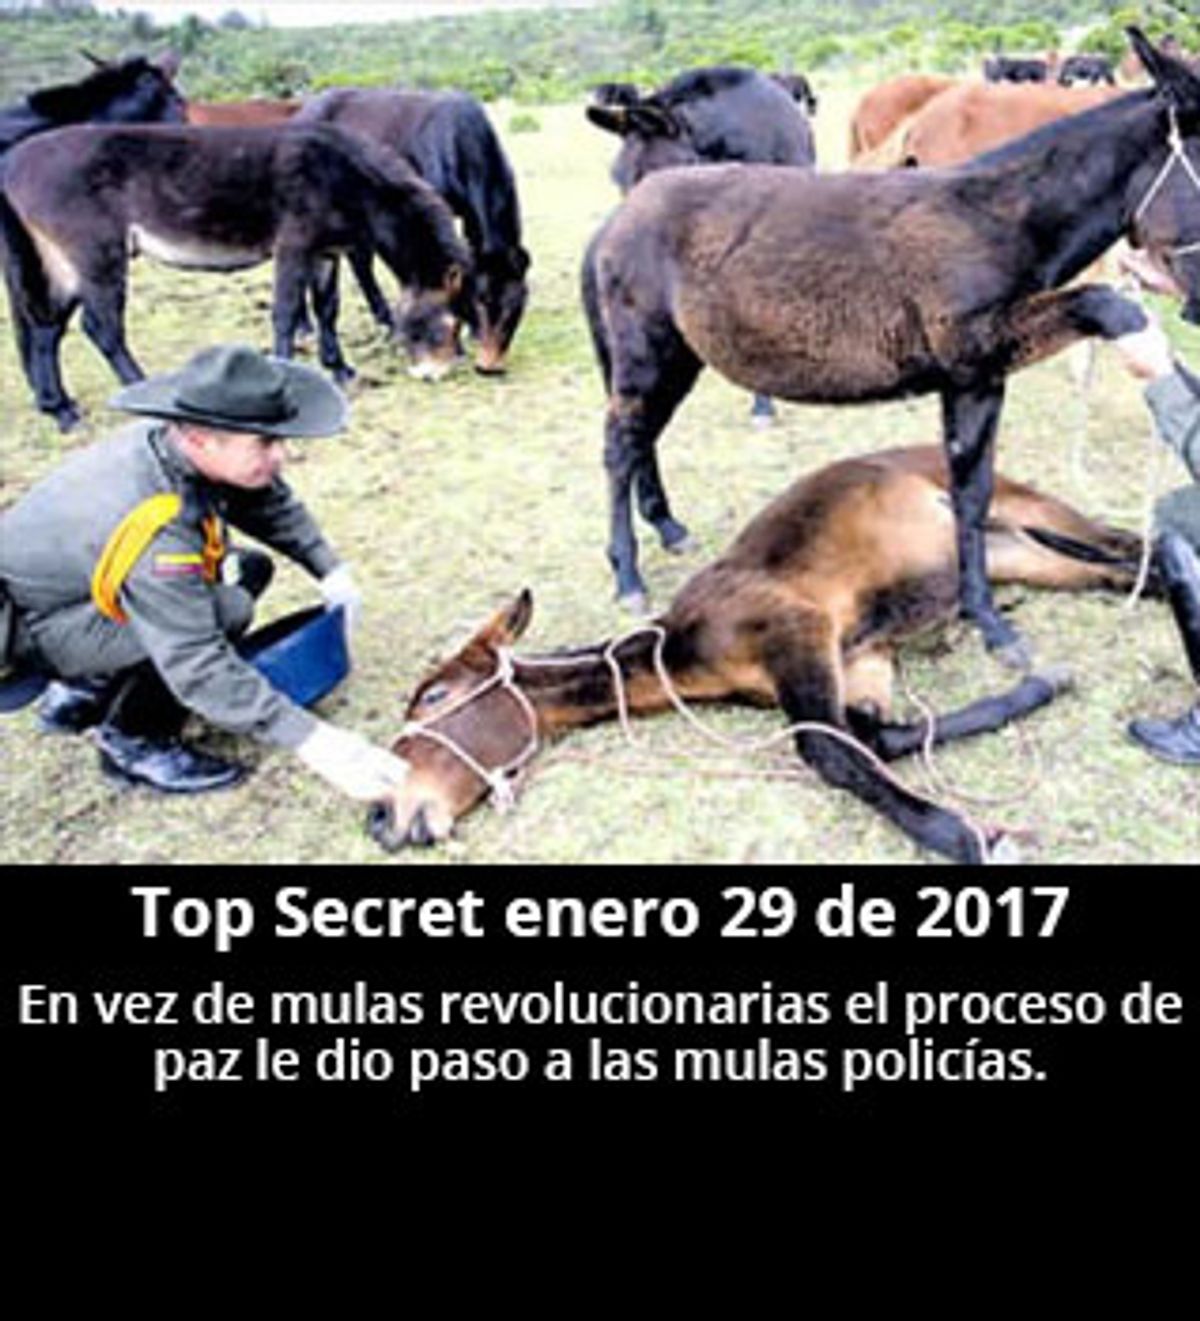 Top Secret enero 29 de 2017